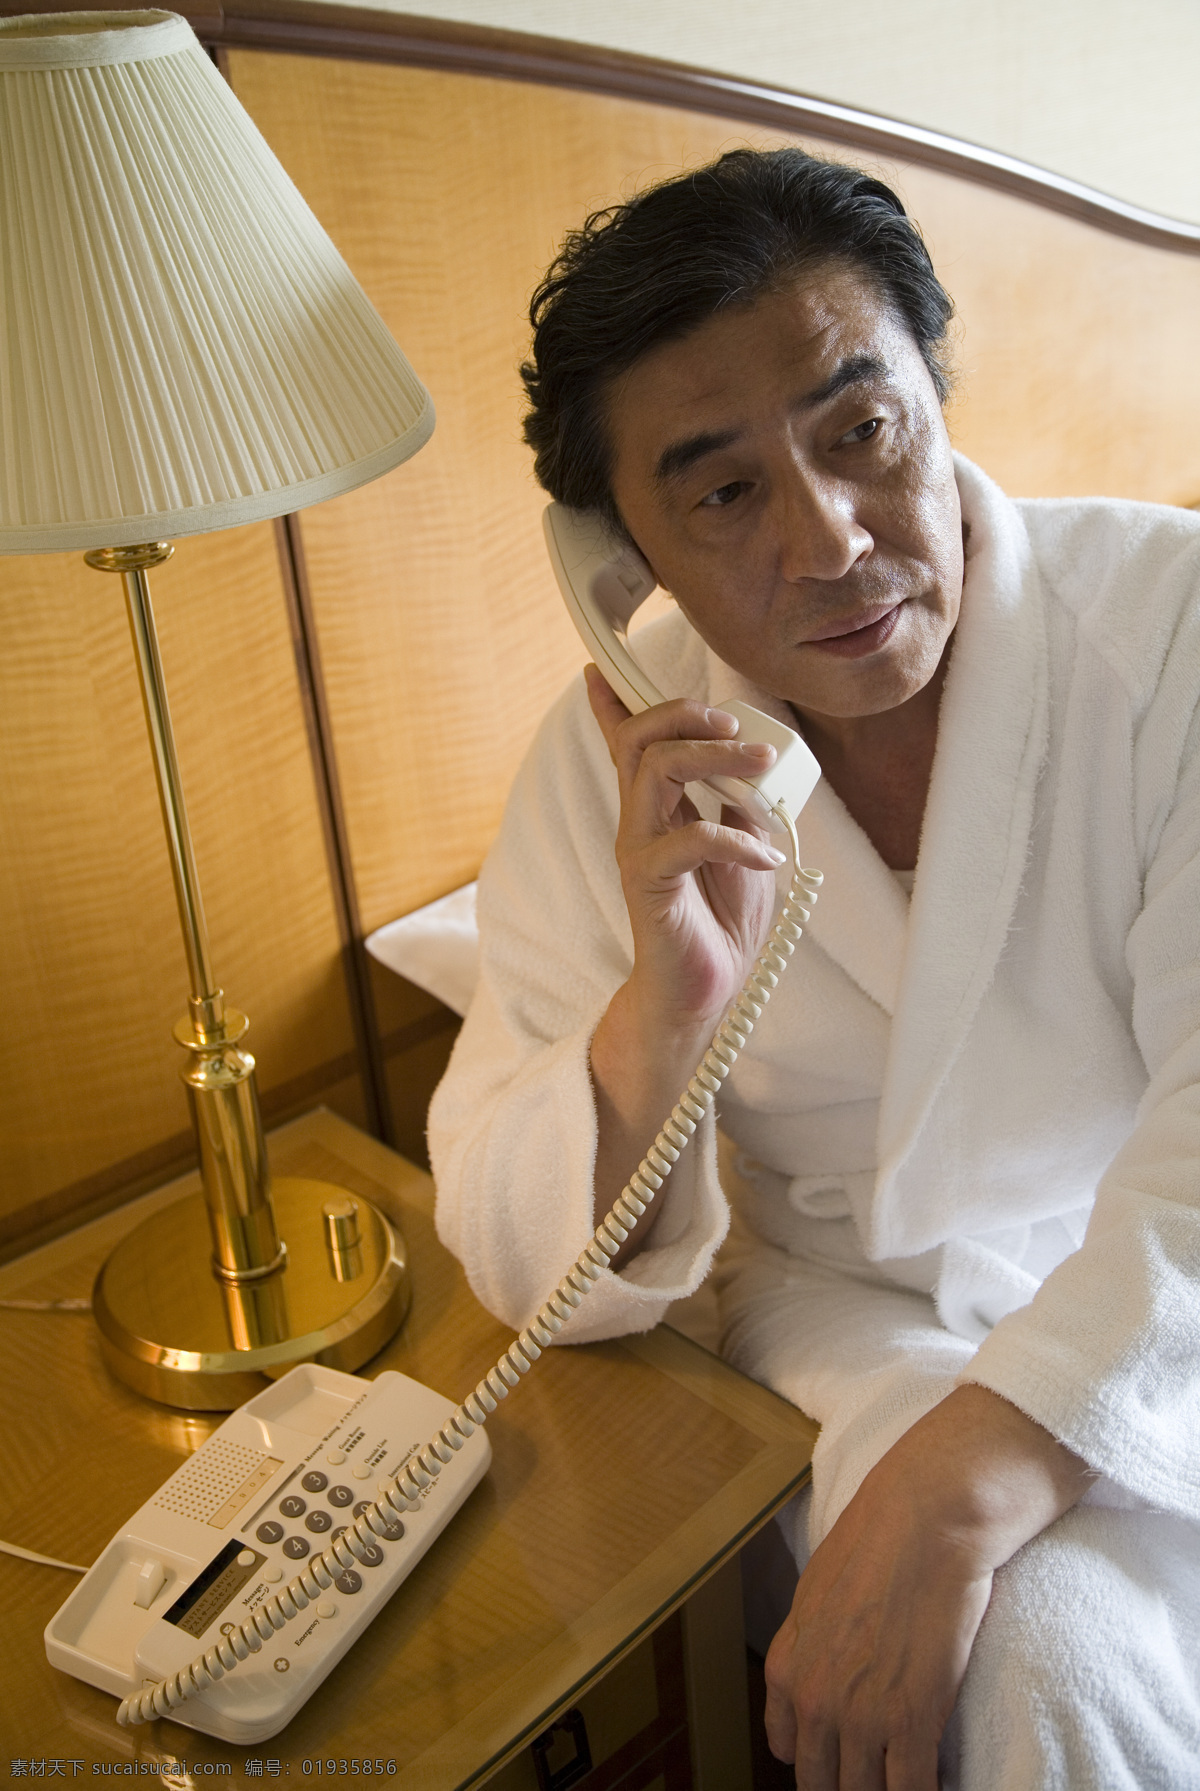 穿 睡衣 坐在 床上 打电话 男人 打电话的男人 男性 酒店 台灯 坐在床上 男性高清图片 人物图库 高清图片 生活人物 人物图片